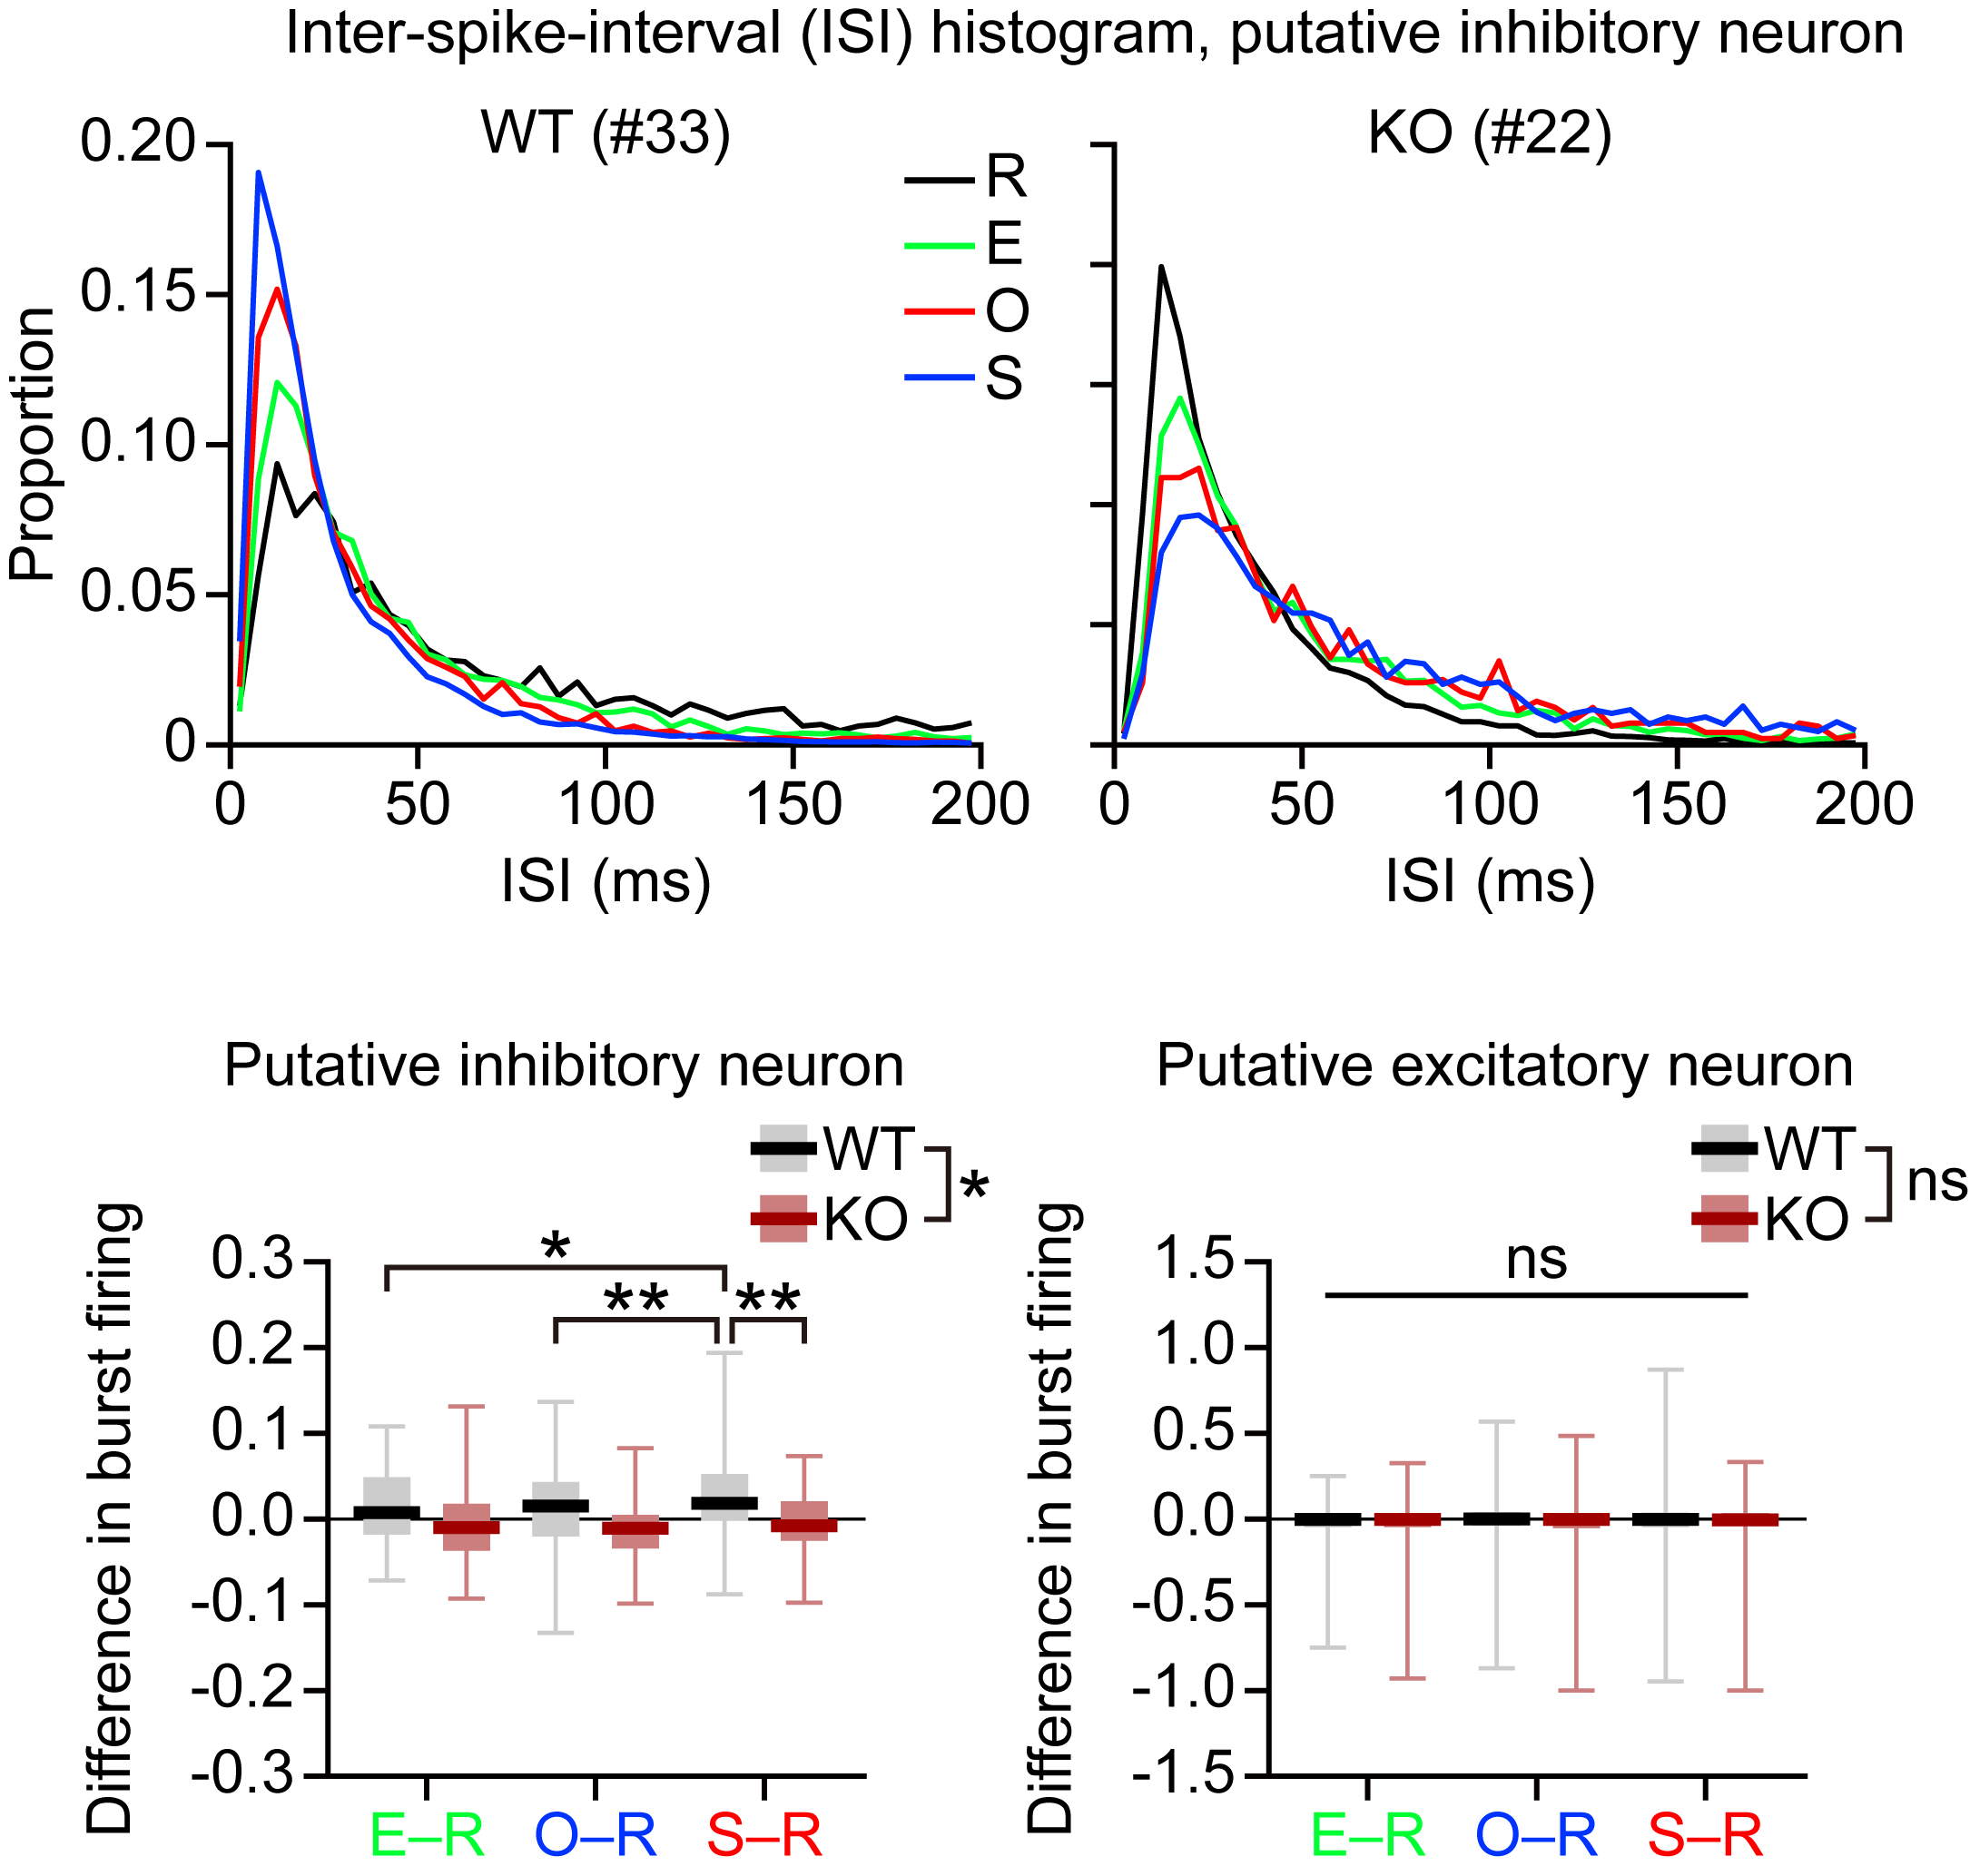 그림 3. Shank2 결손 생쥐 뇌에서 억제성 뉴런의 다발성 발화가 감소되어 있음 관련 이미지로서 자세한 내용은 하단에 위치해 있습니다.